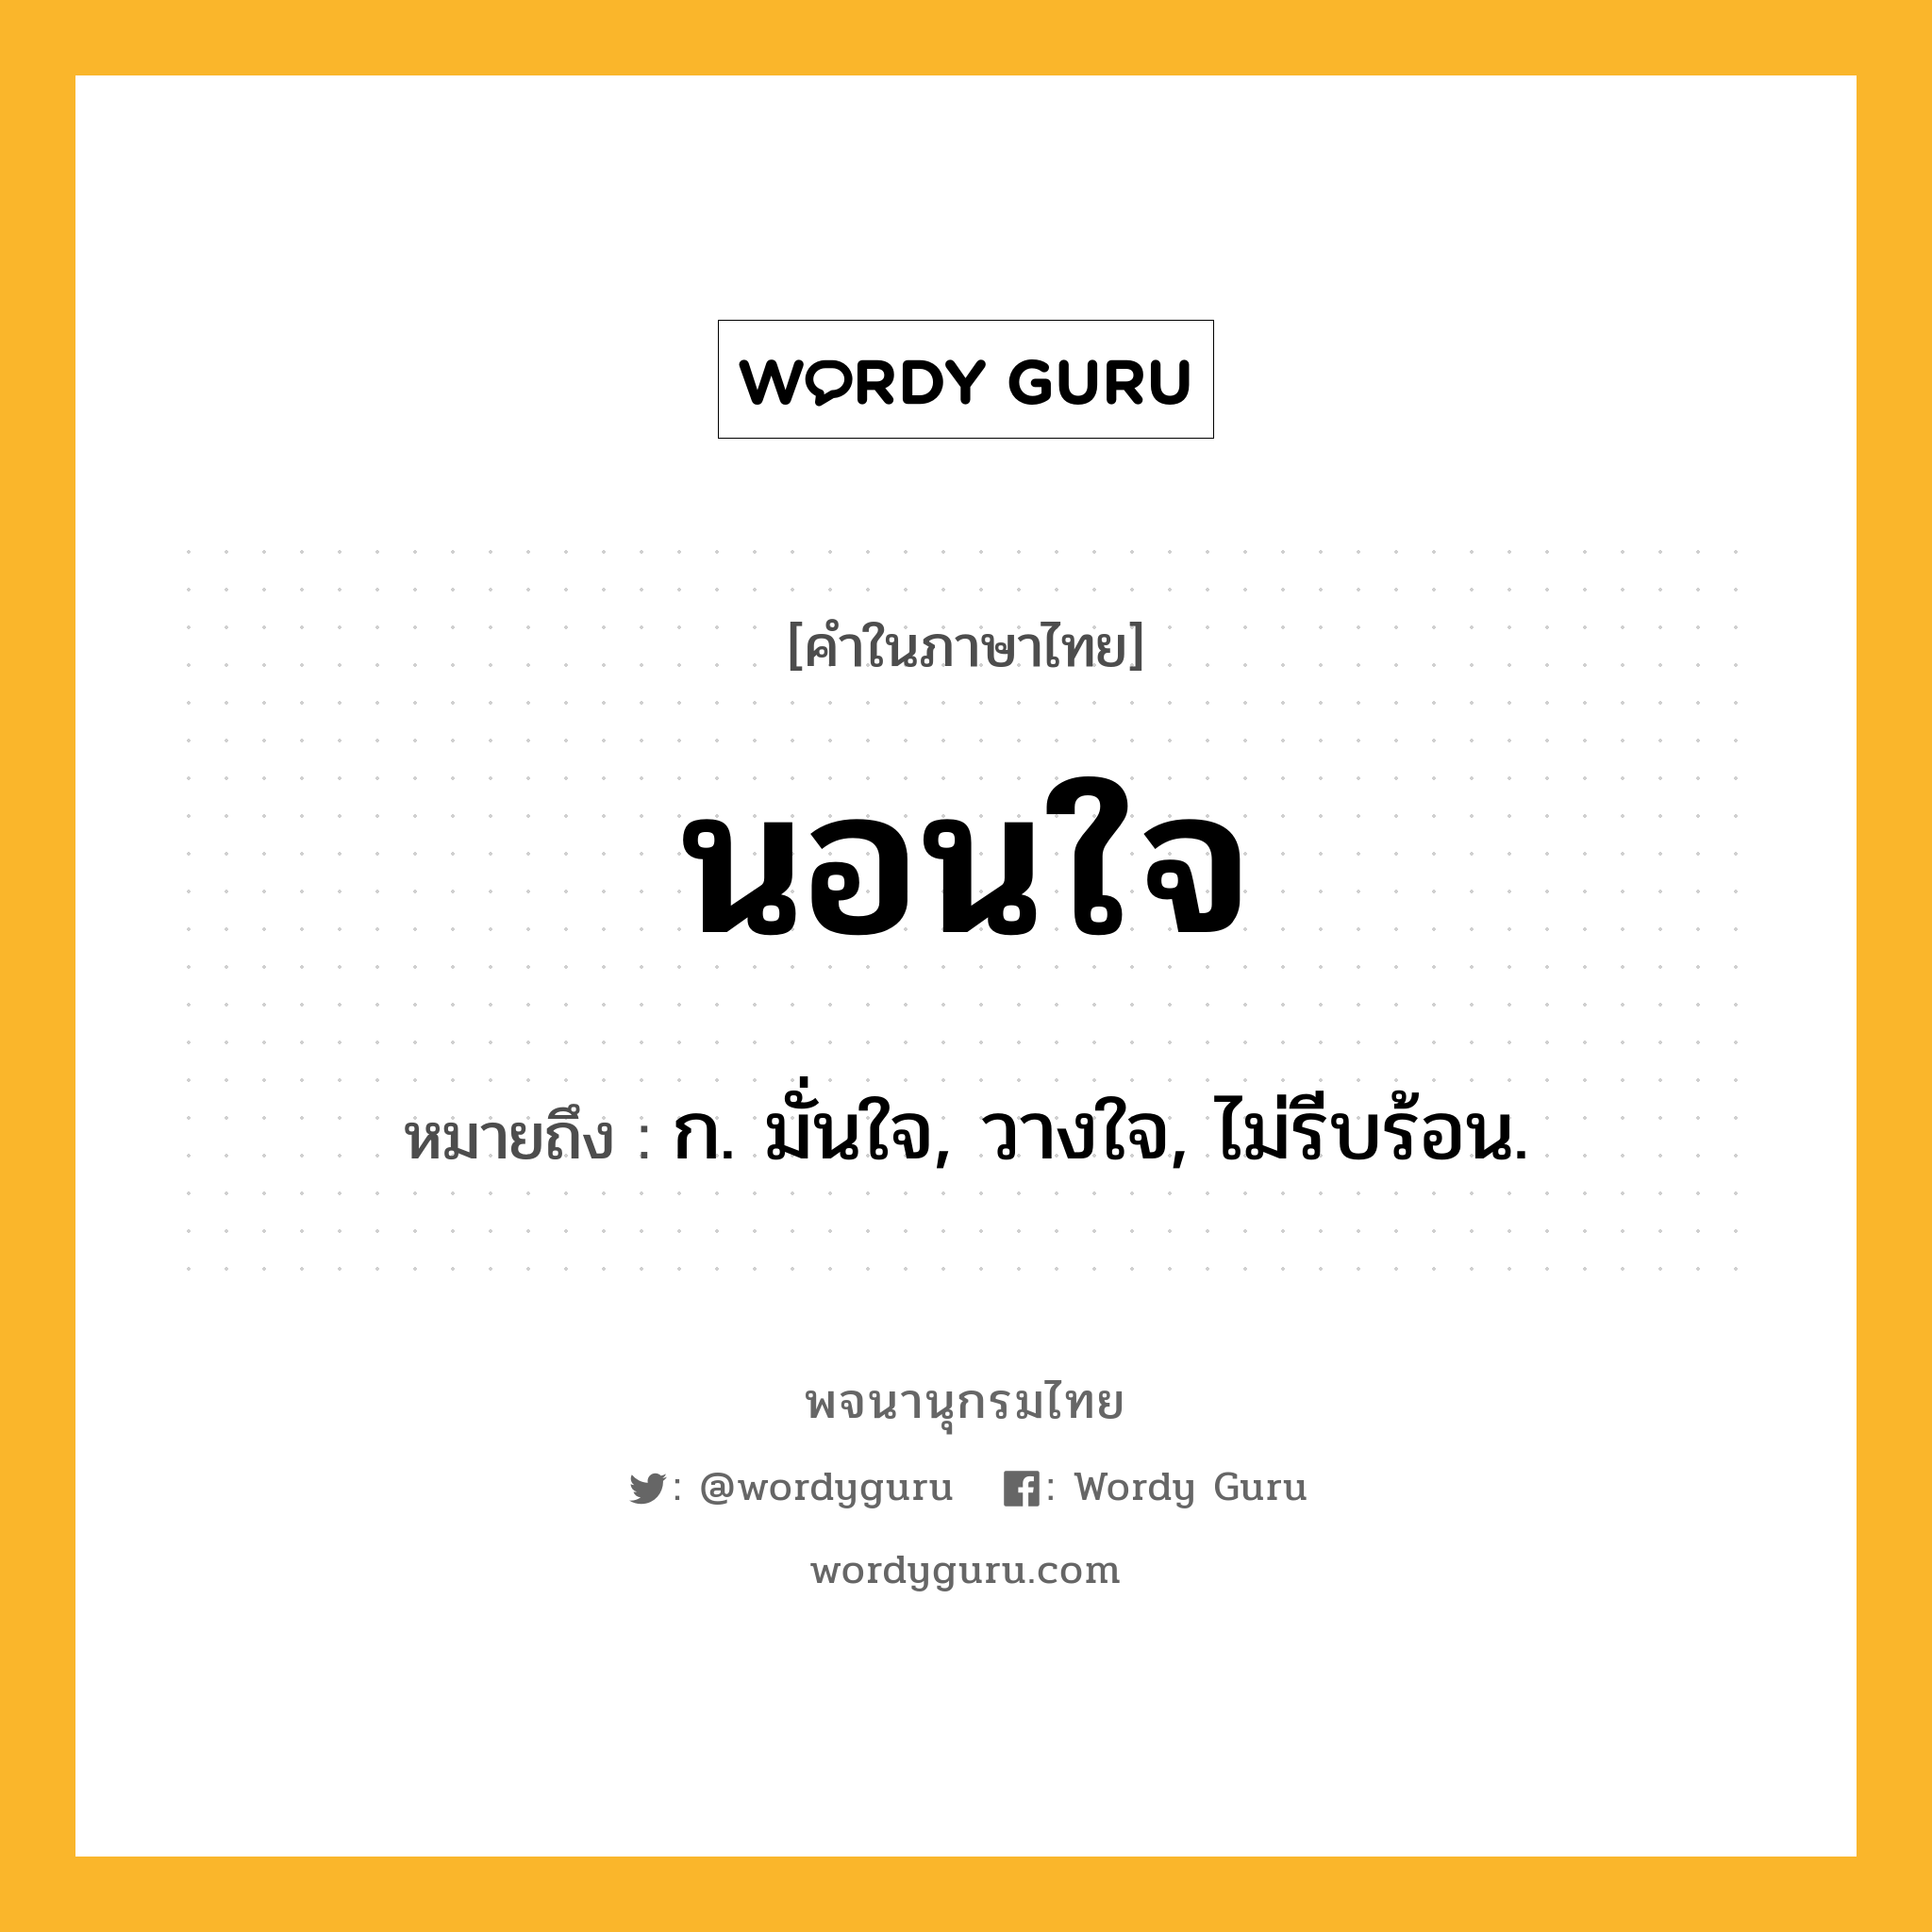 นอนใจ ความหมาย หมายถึงอะไร?, คำในภาษาไทย นอนใจ หมายถึง ก. มั่นใจ, วางใจ, ไม่รีบร้อน.